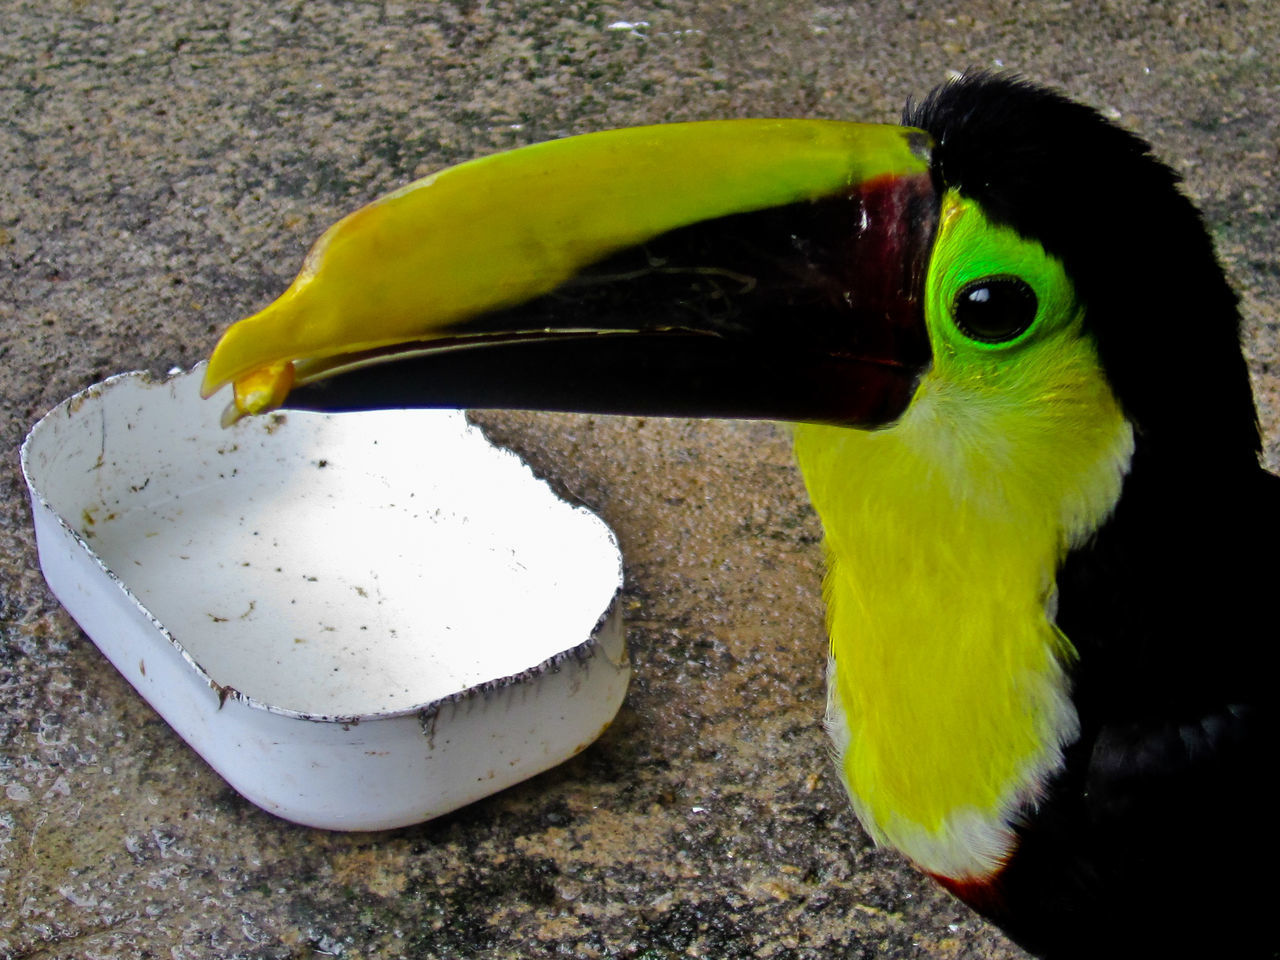 CLOSE-UP OF A EATING BIRD